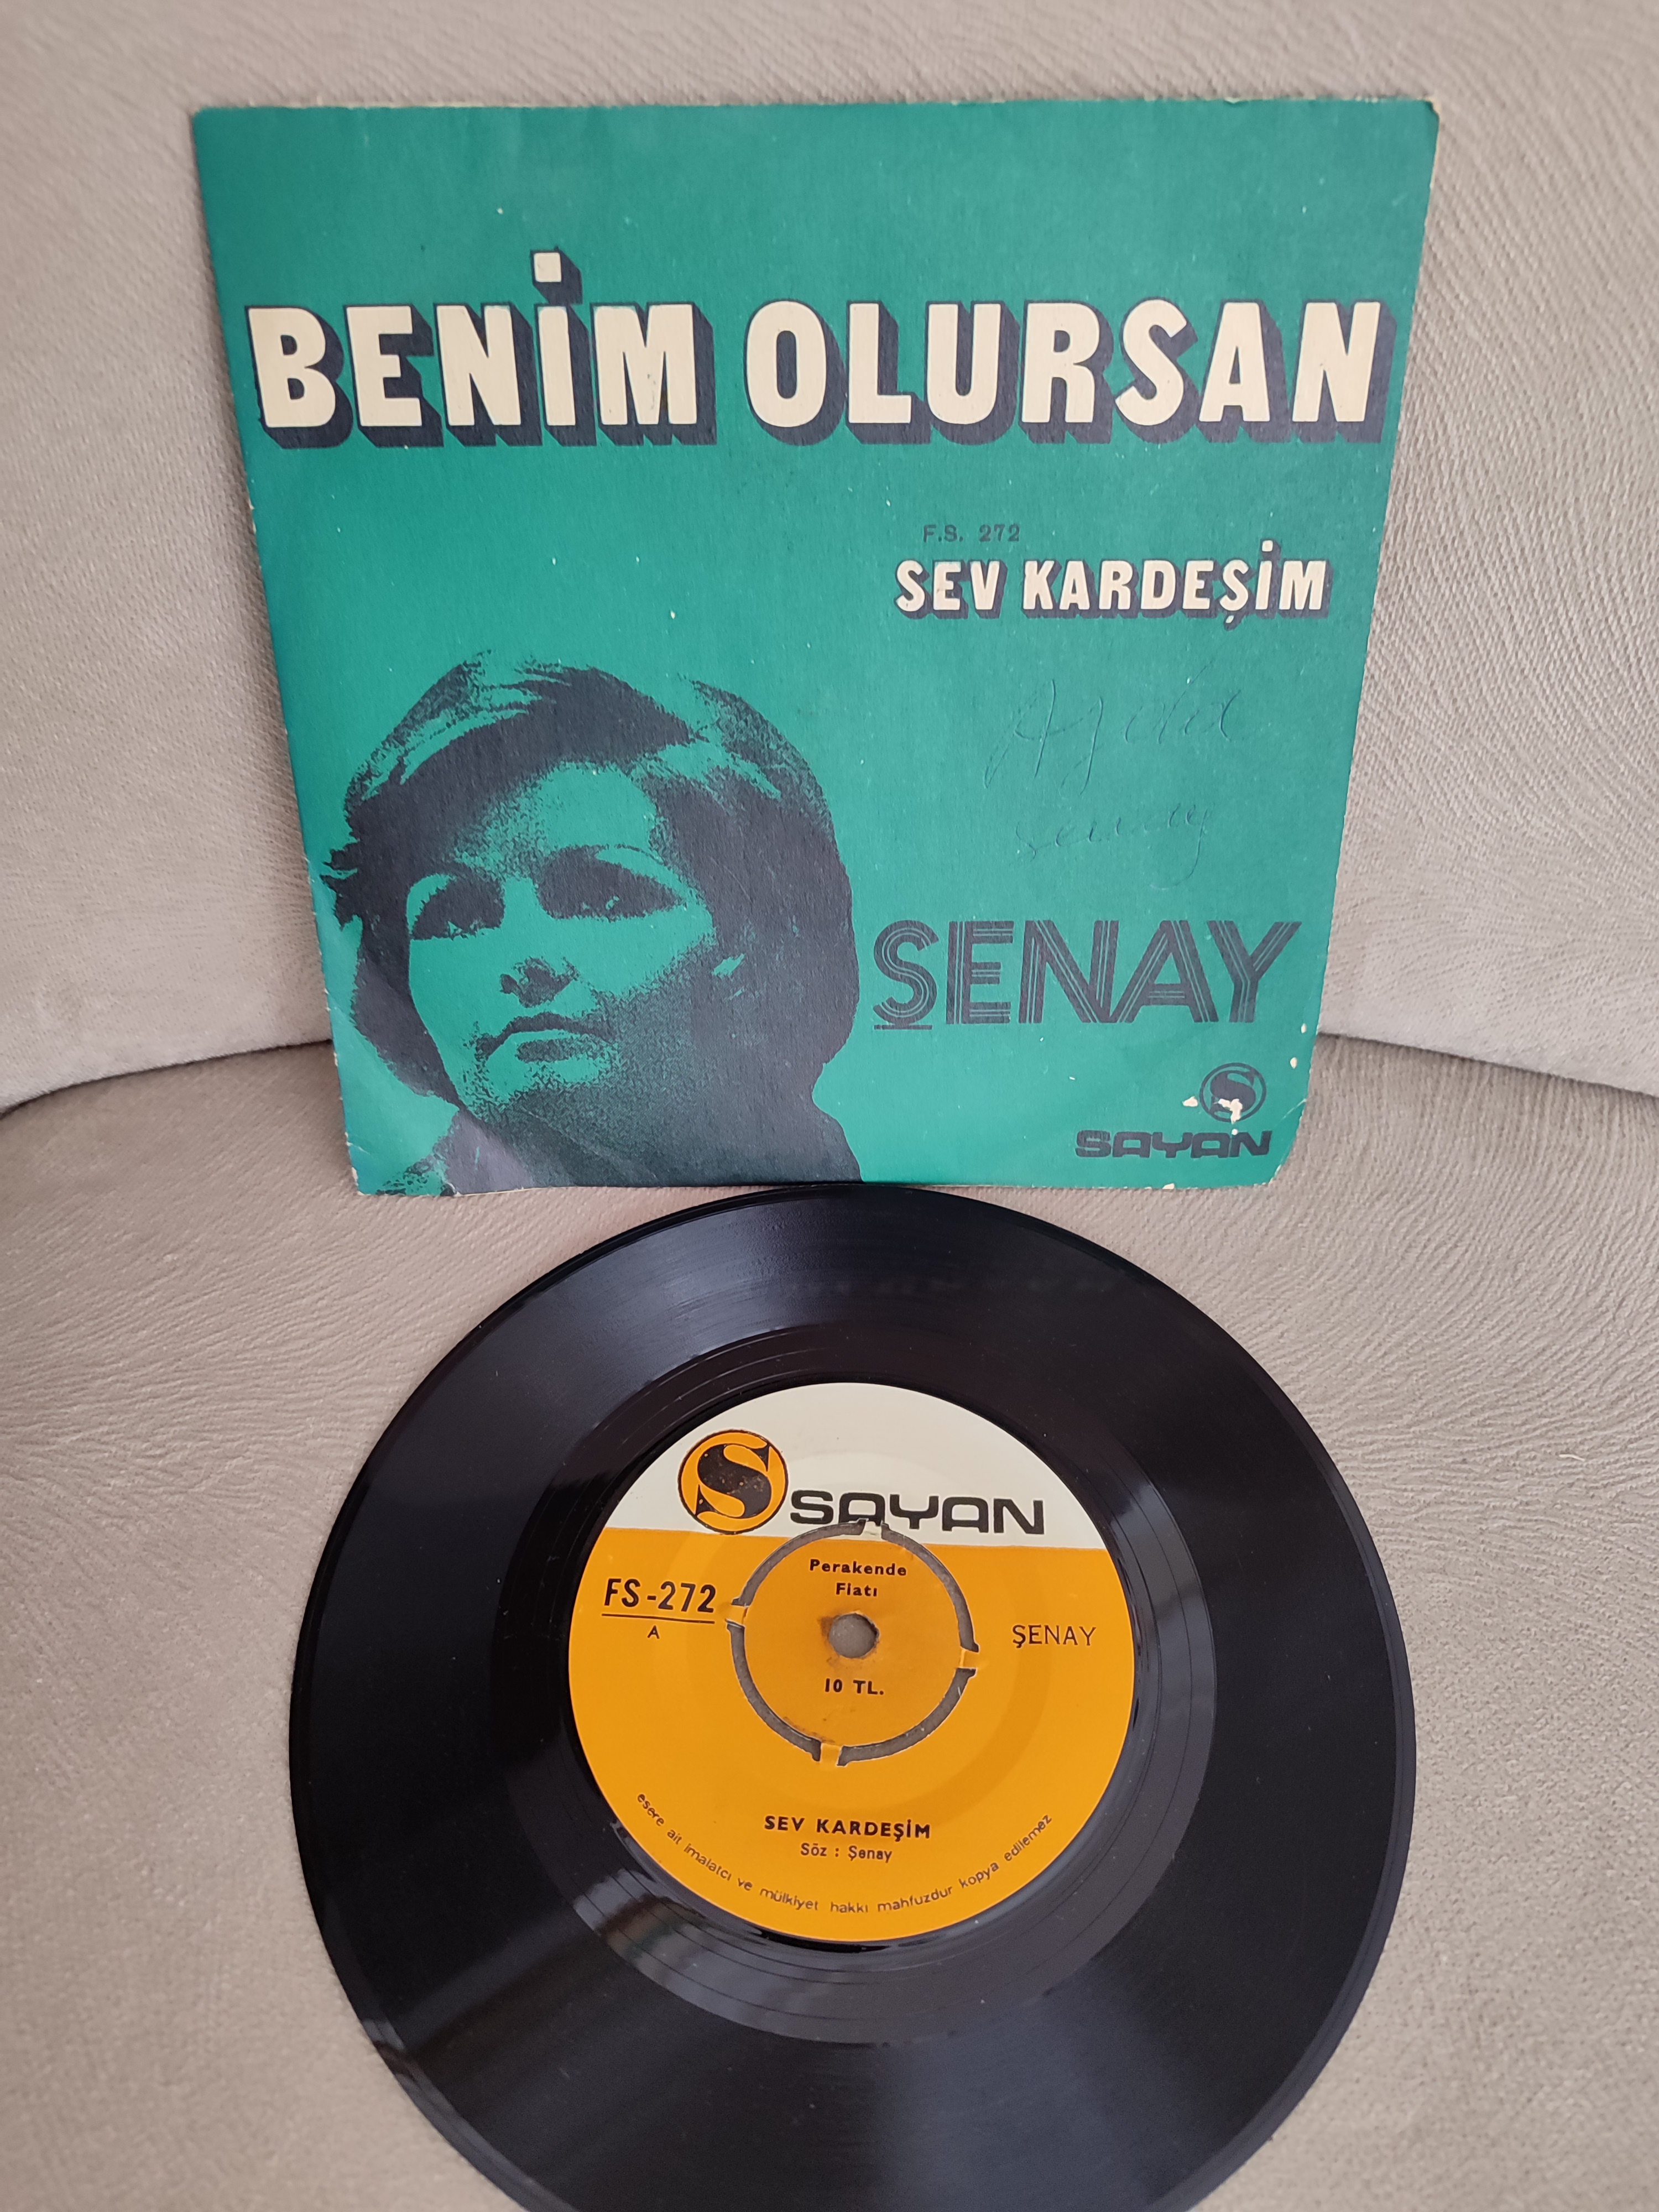 ŞENAY - Sev Kardeşim / Benim Olursan - 1971 Türkiye Basım 45lik Plak 2. el